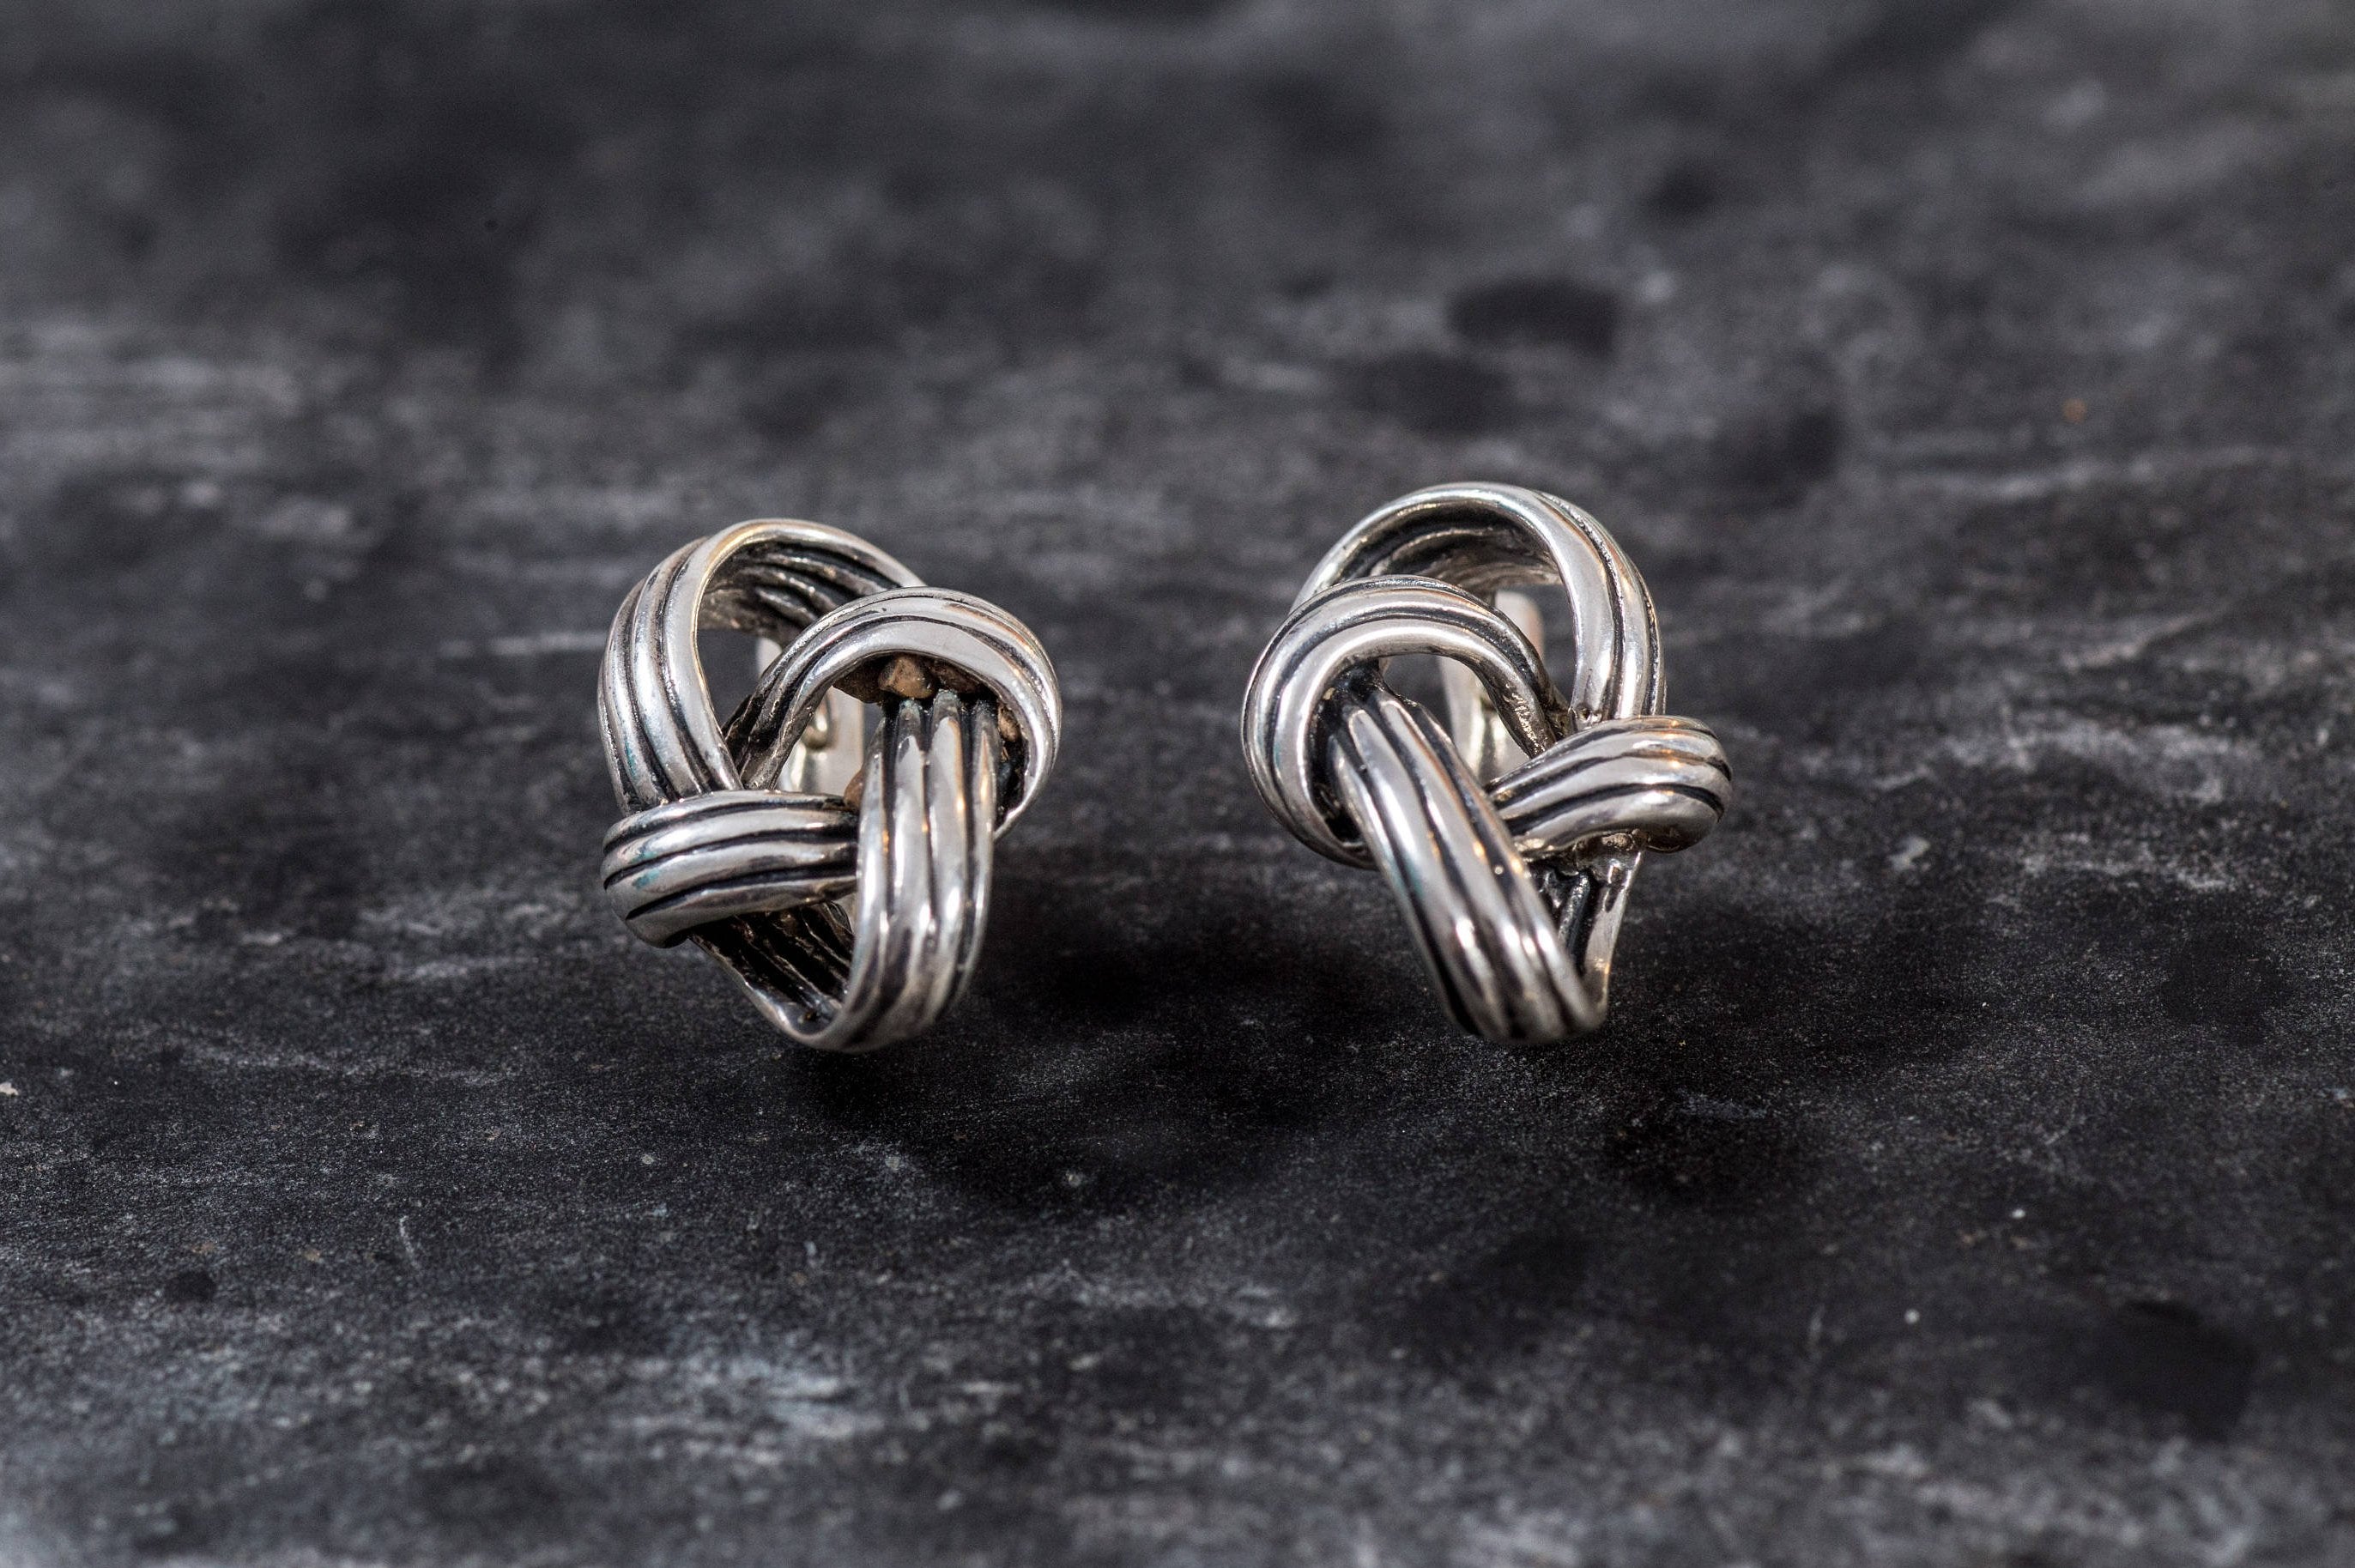 Silver Knot Earrings, Knot Earrings, Silver Earrings, Unique Art Earrings, Statement Earrings, Artistic Earrings, Sterling Silver